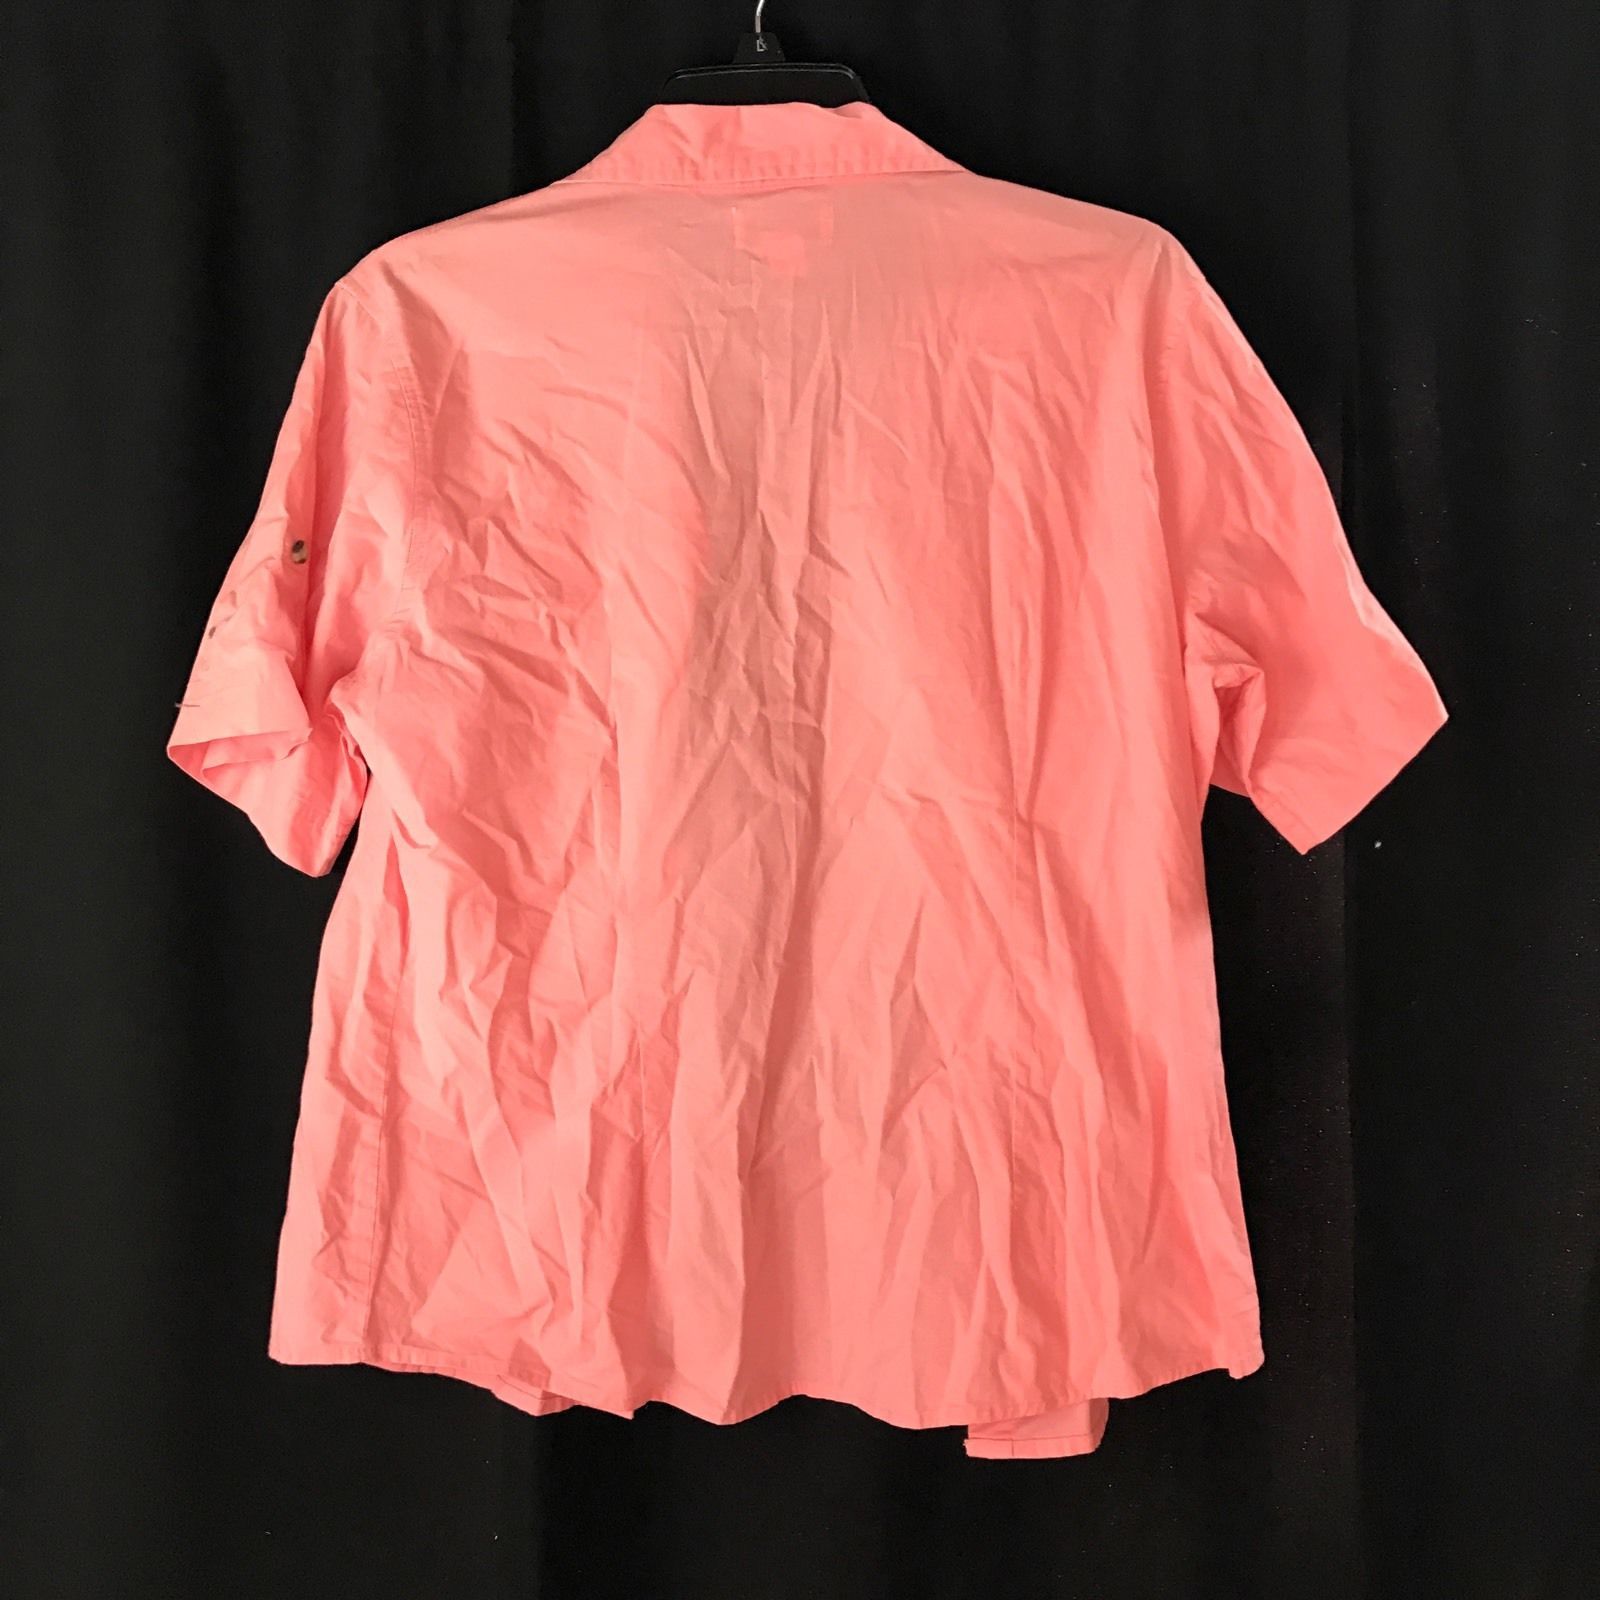 Kids Pink Magellan Fish Gear Button Up Shirt Size L - Tops, Shirts & T ...